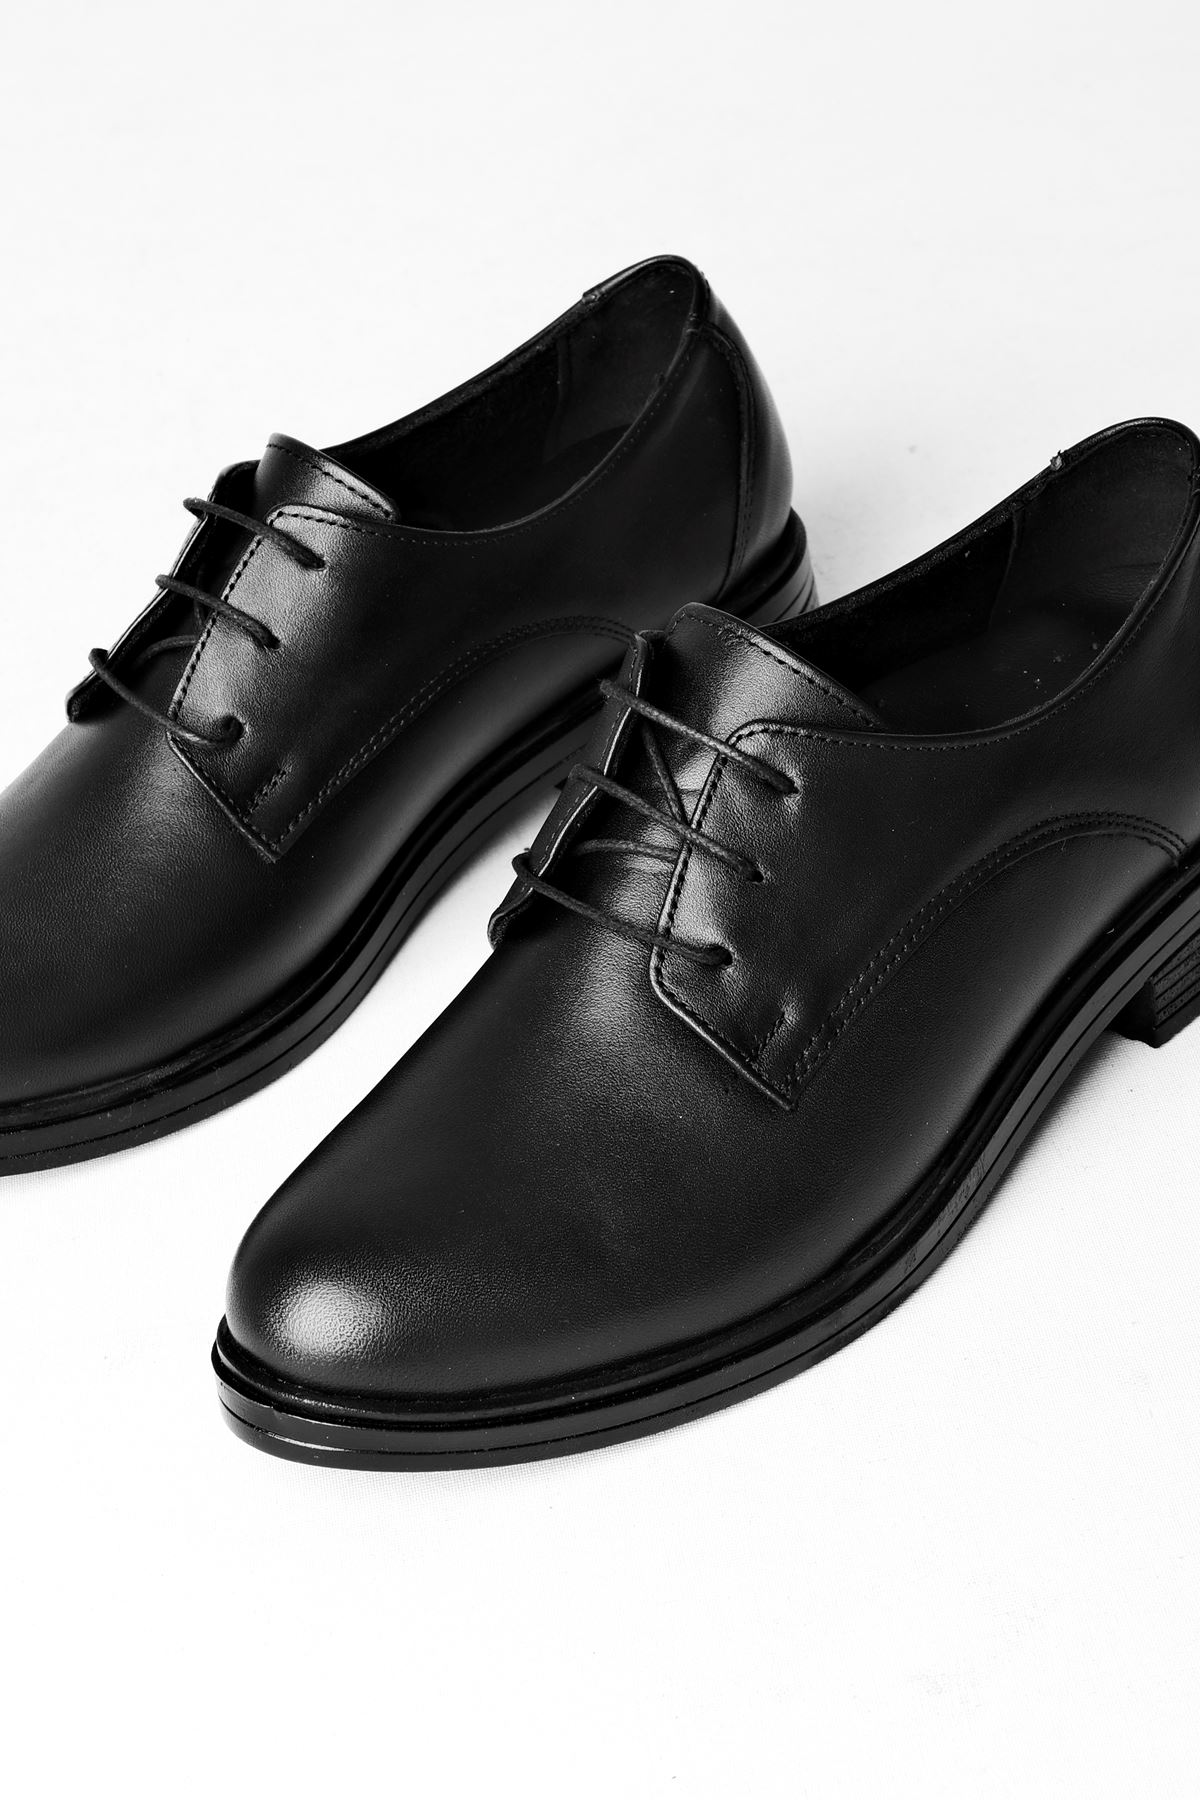 Gresa Kadın Klasik ayakkabı Bağcık Detay-siyah